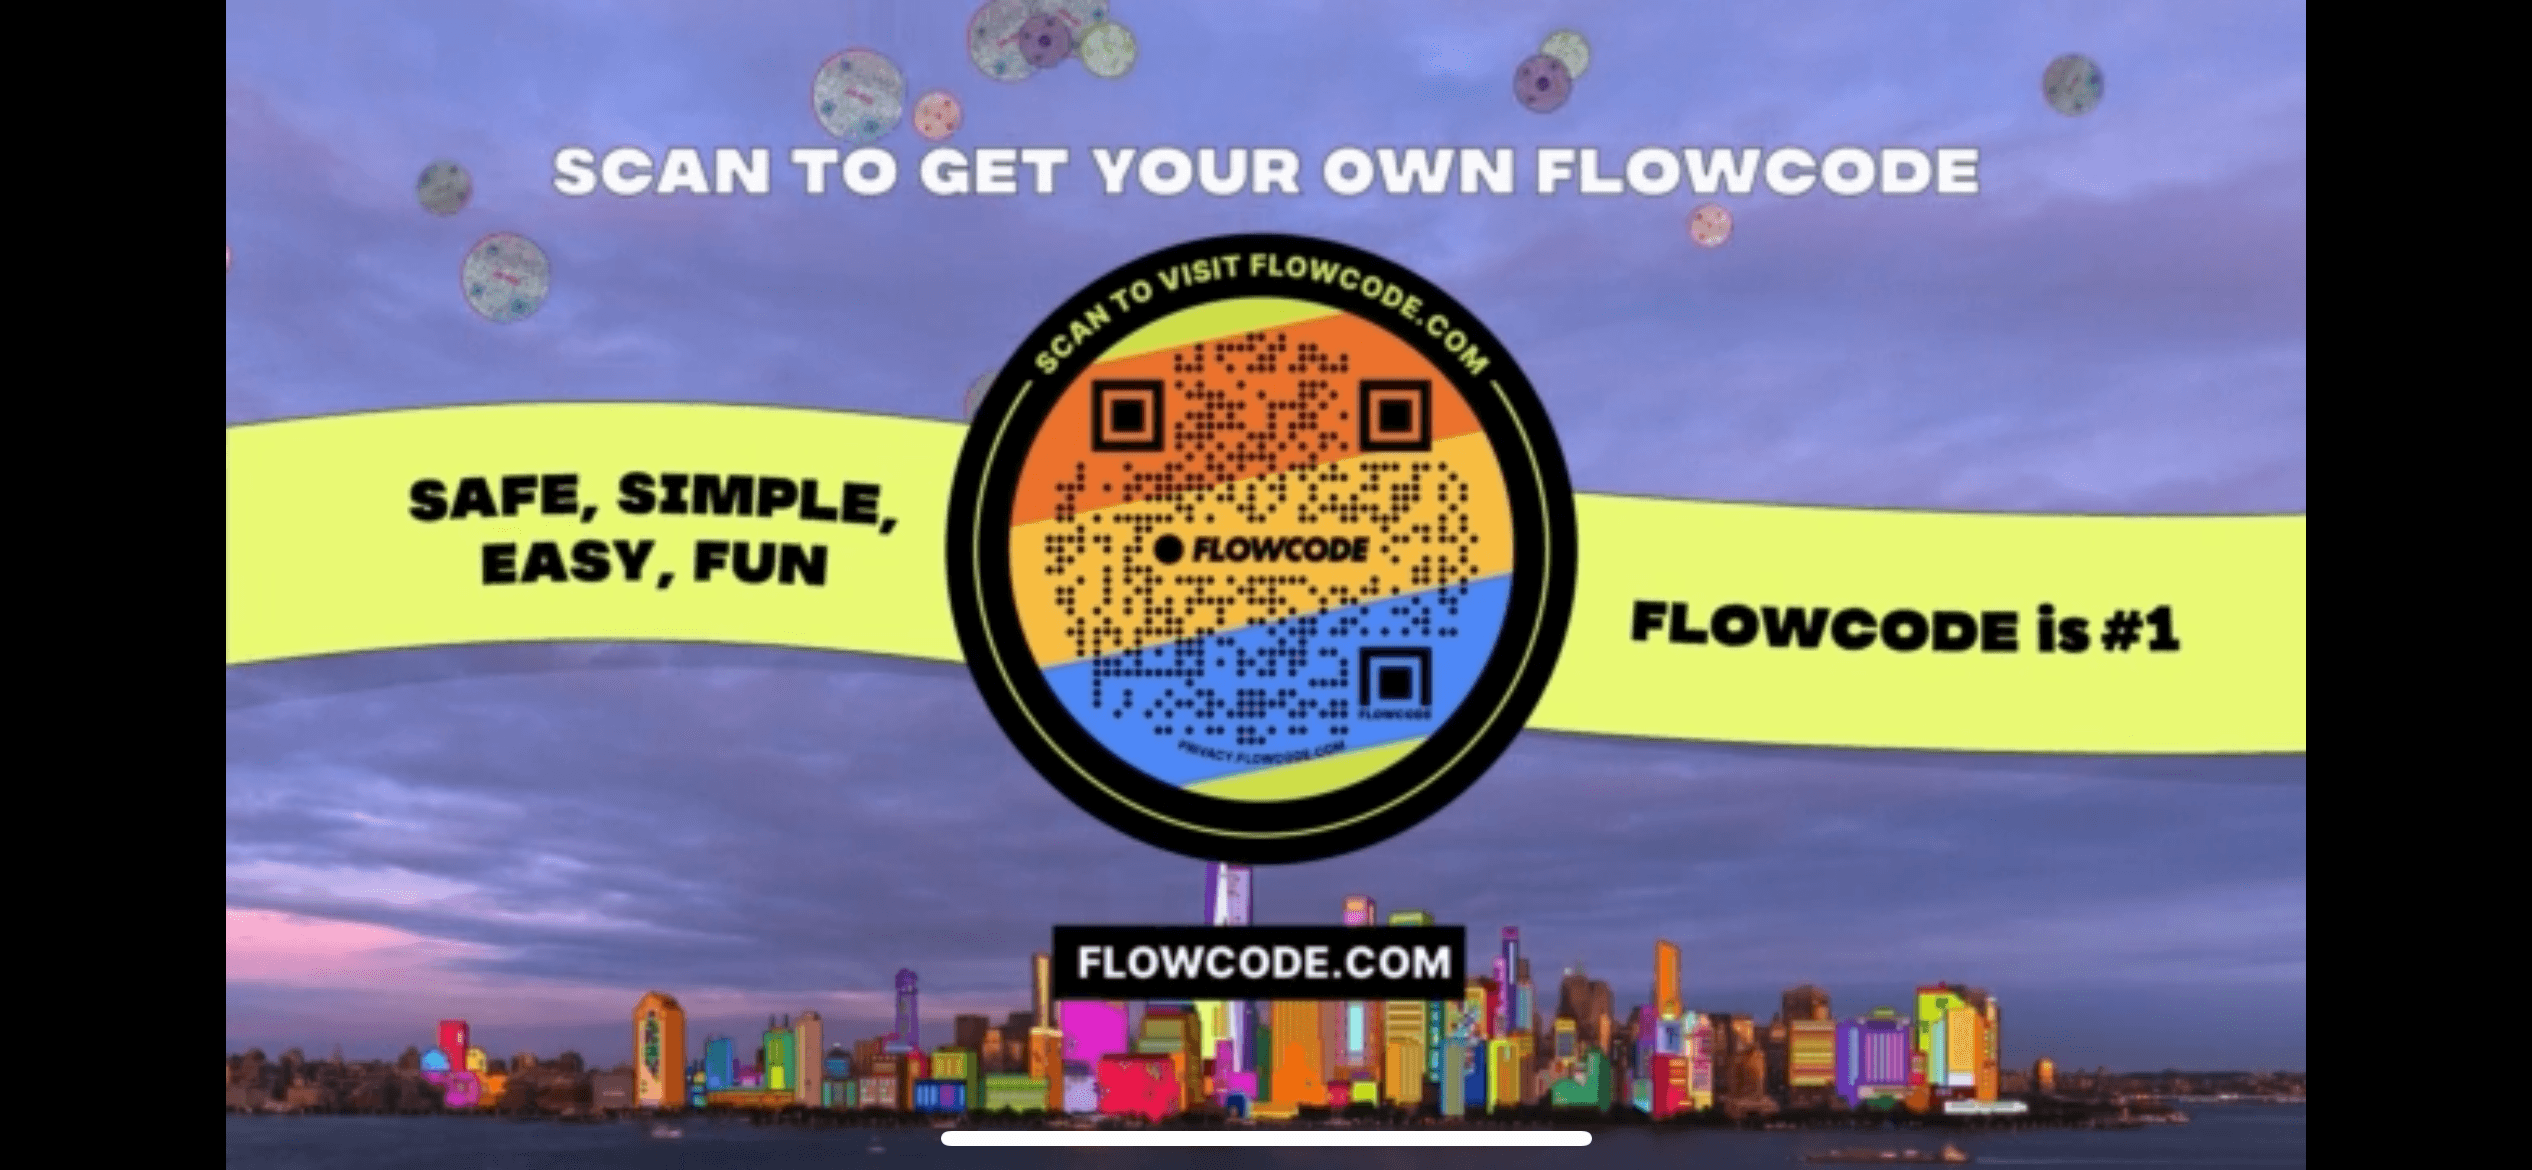 Flowcode Number 1